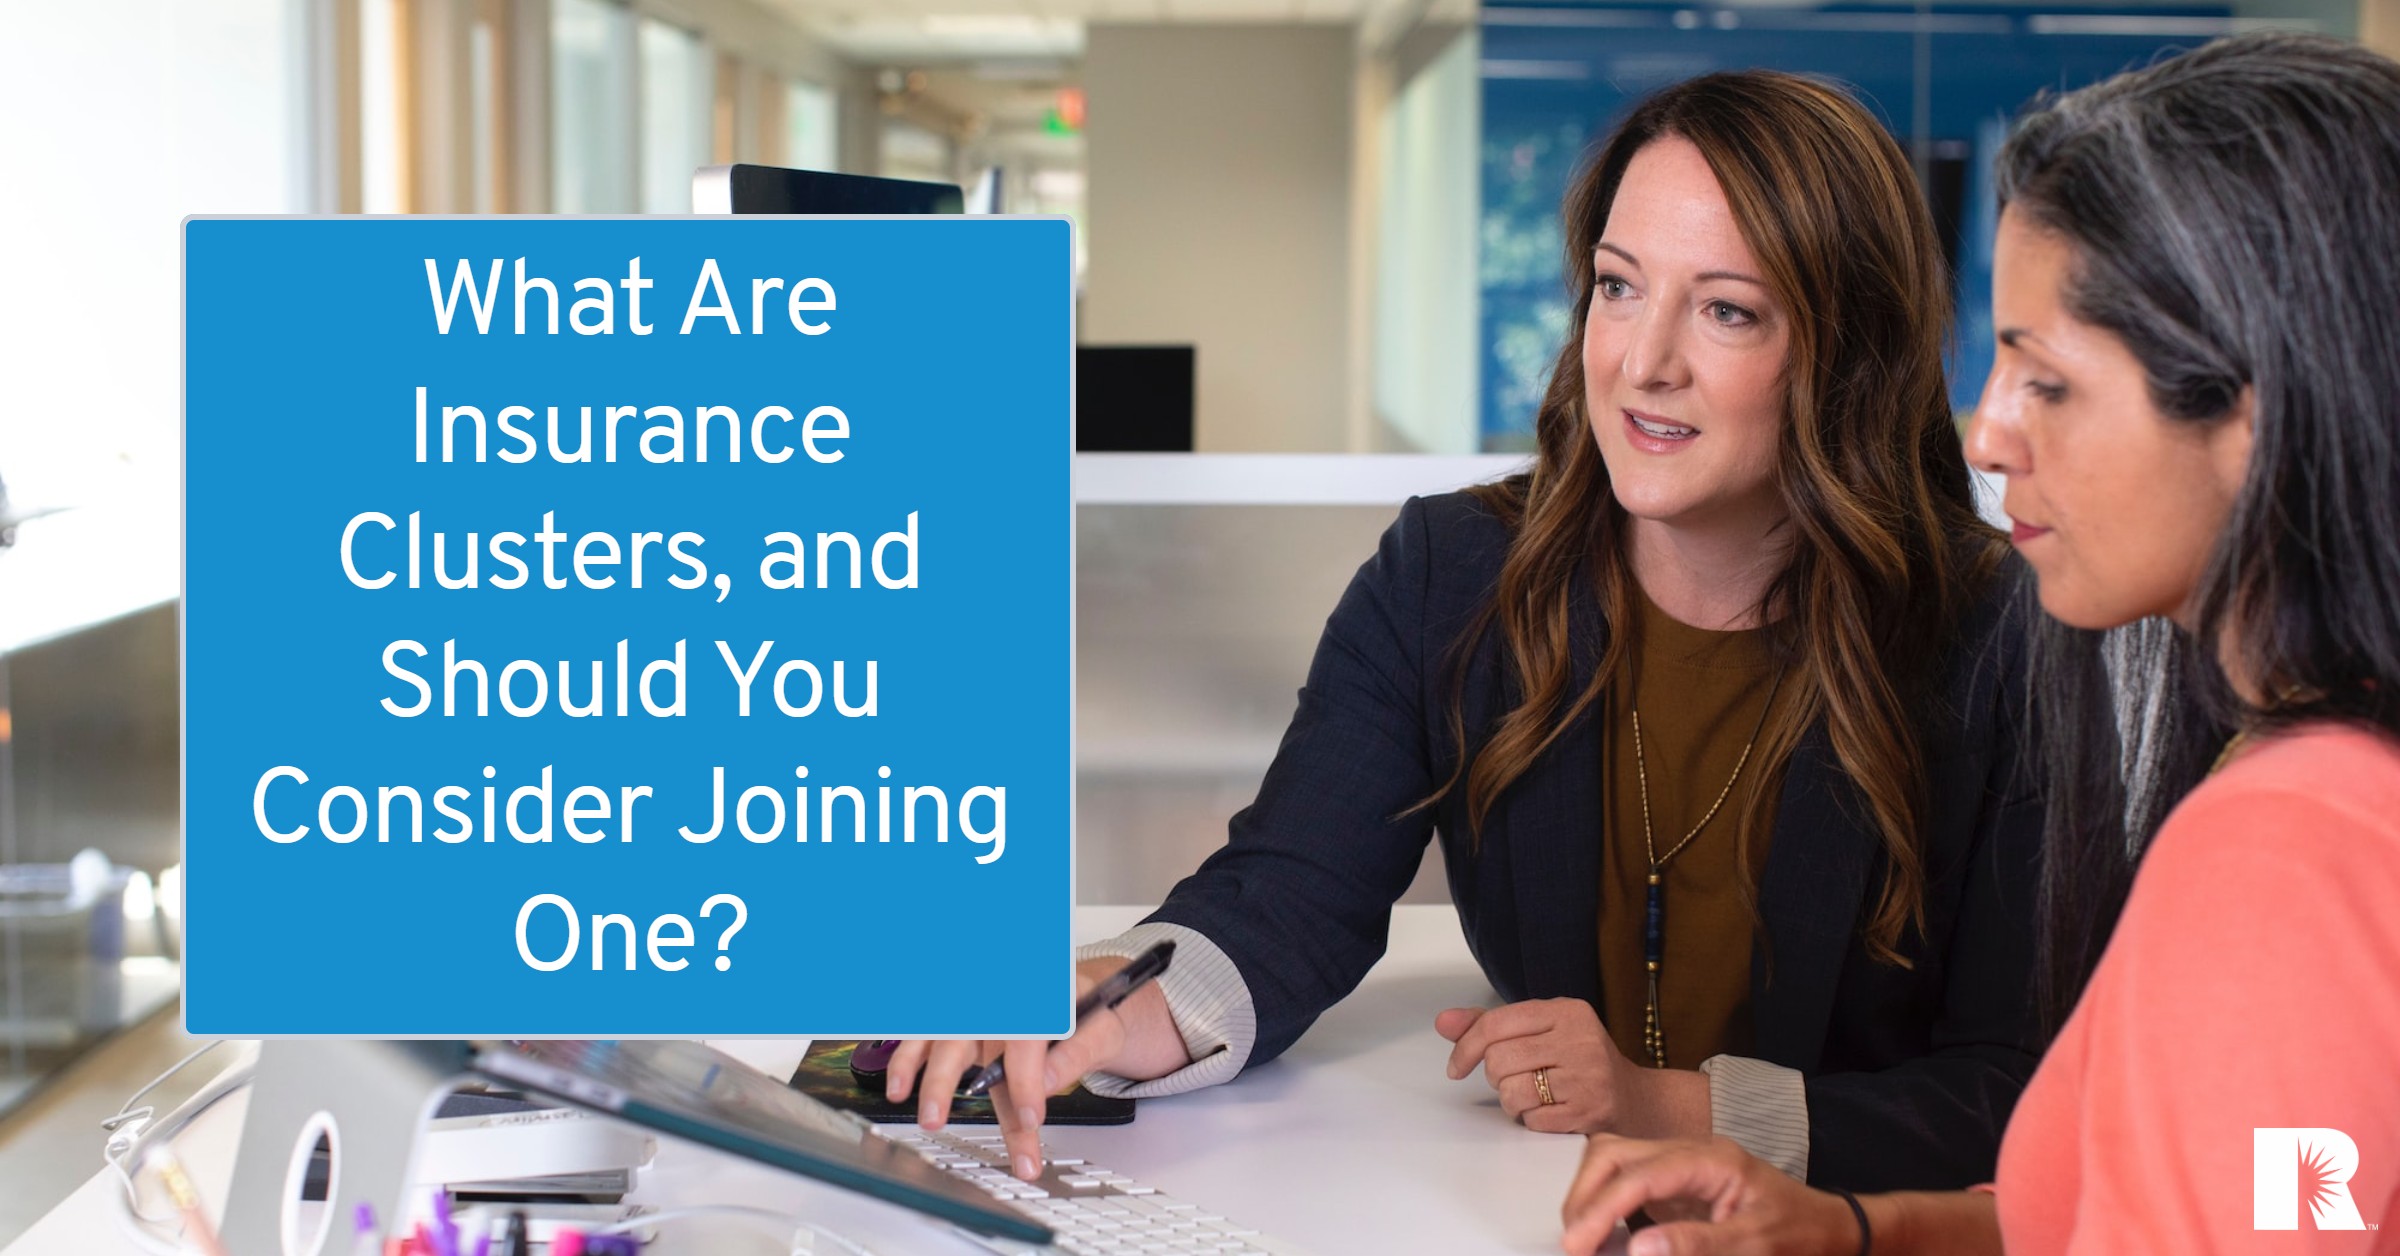 An insurance agent advises a client on risk management.